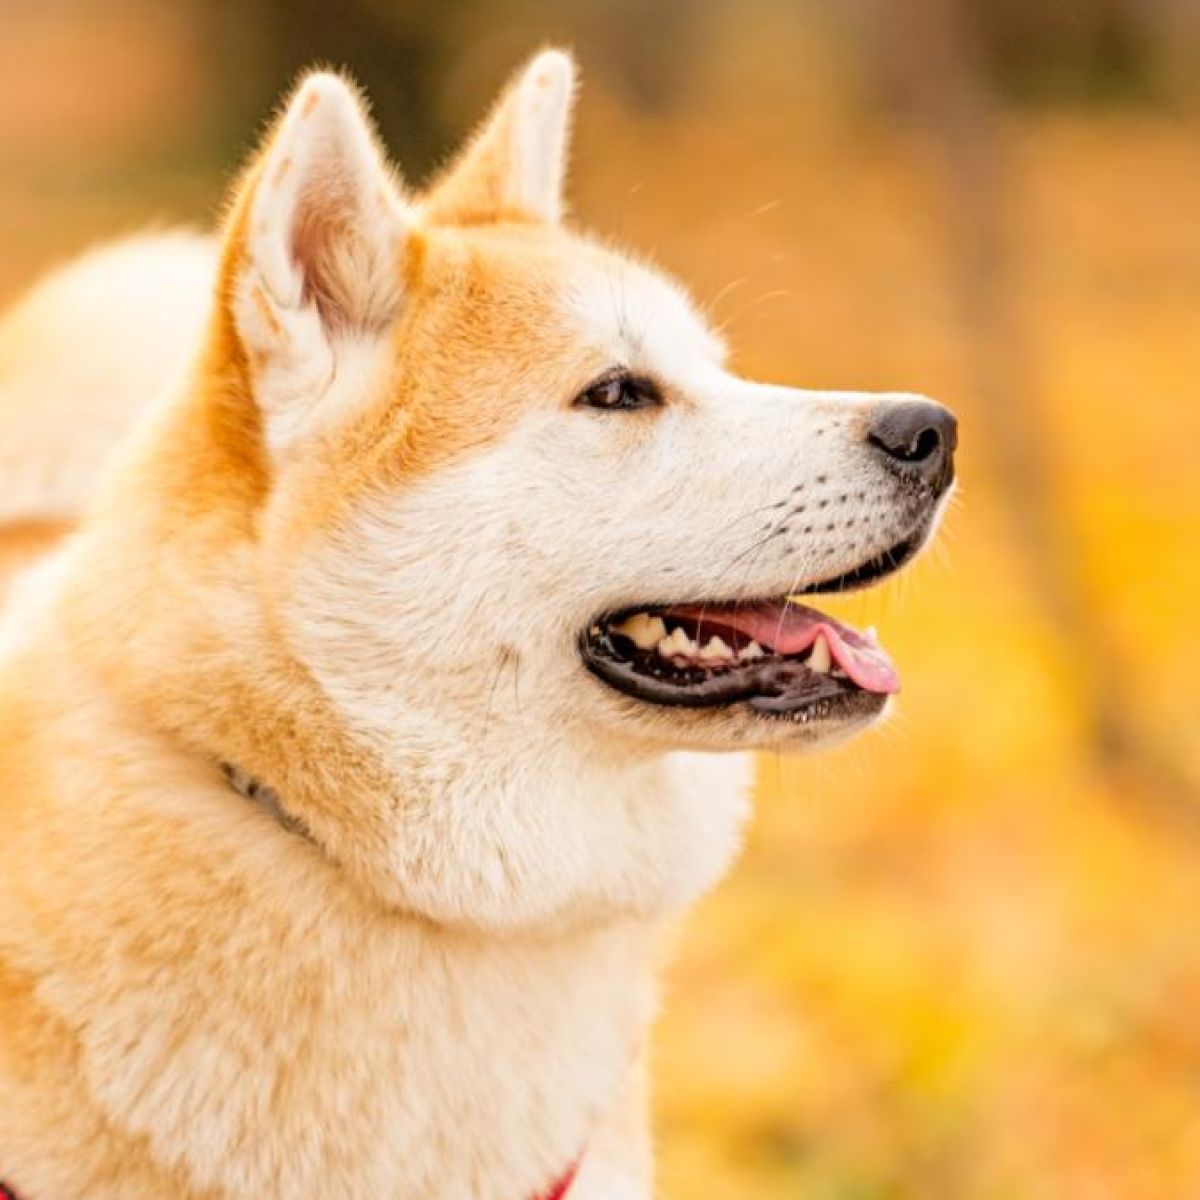 japanese akita guard dog